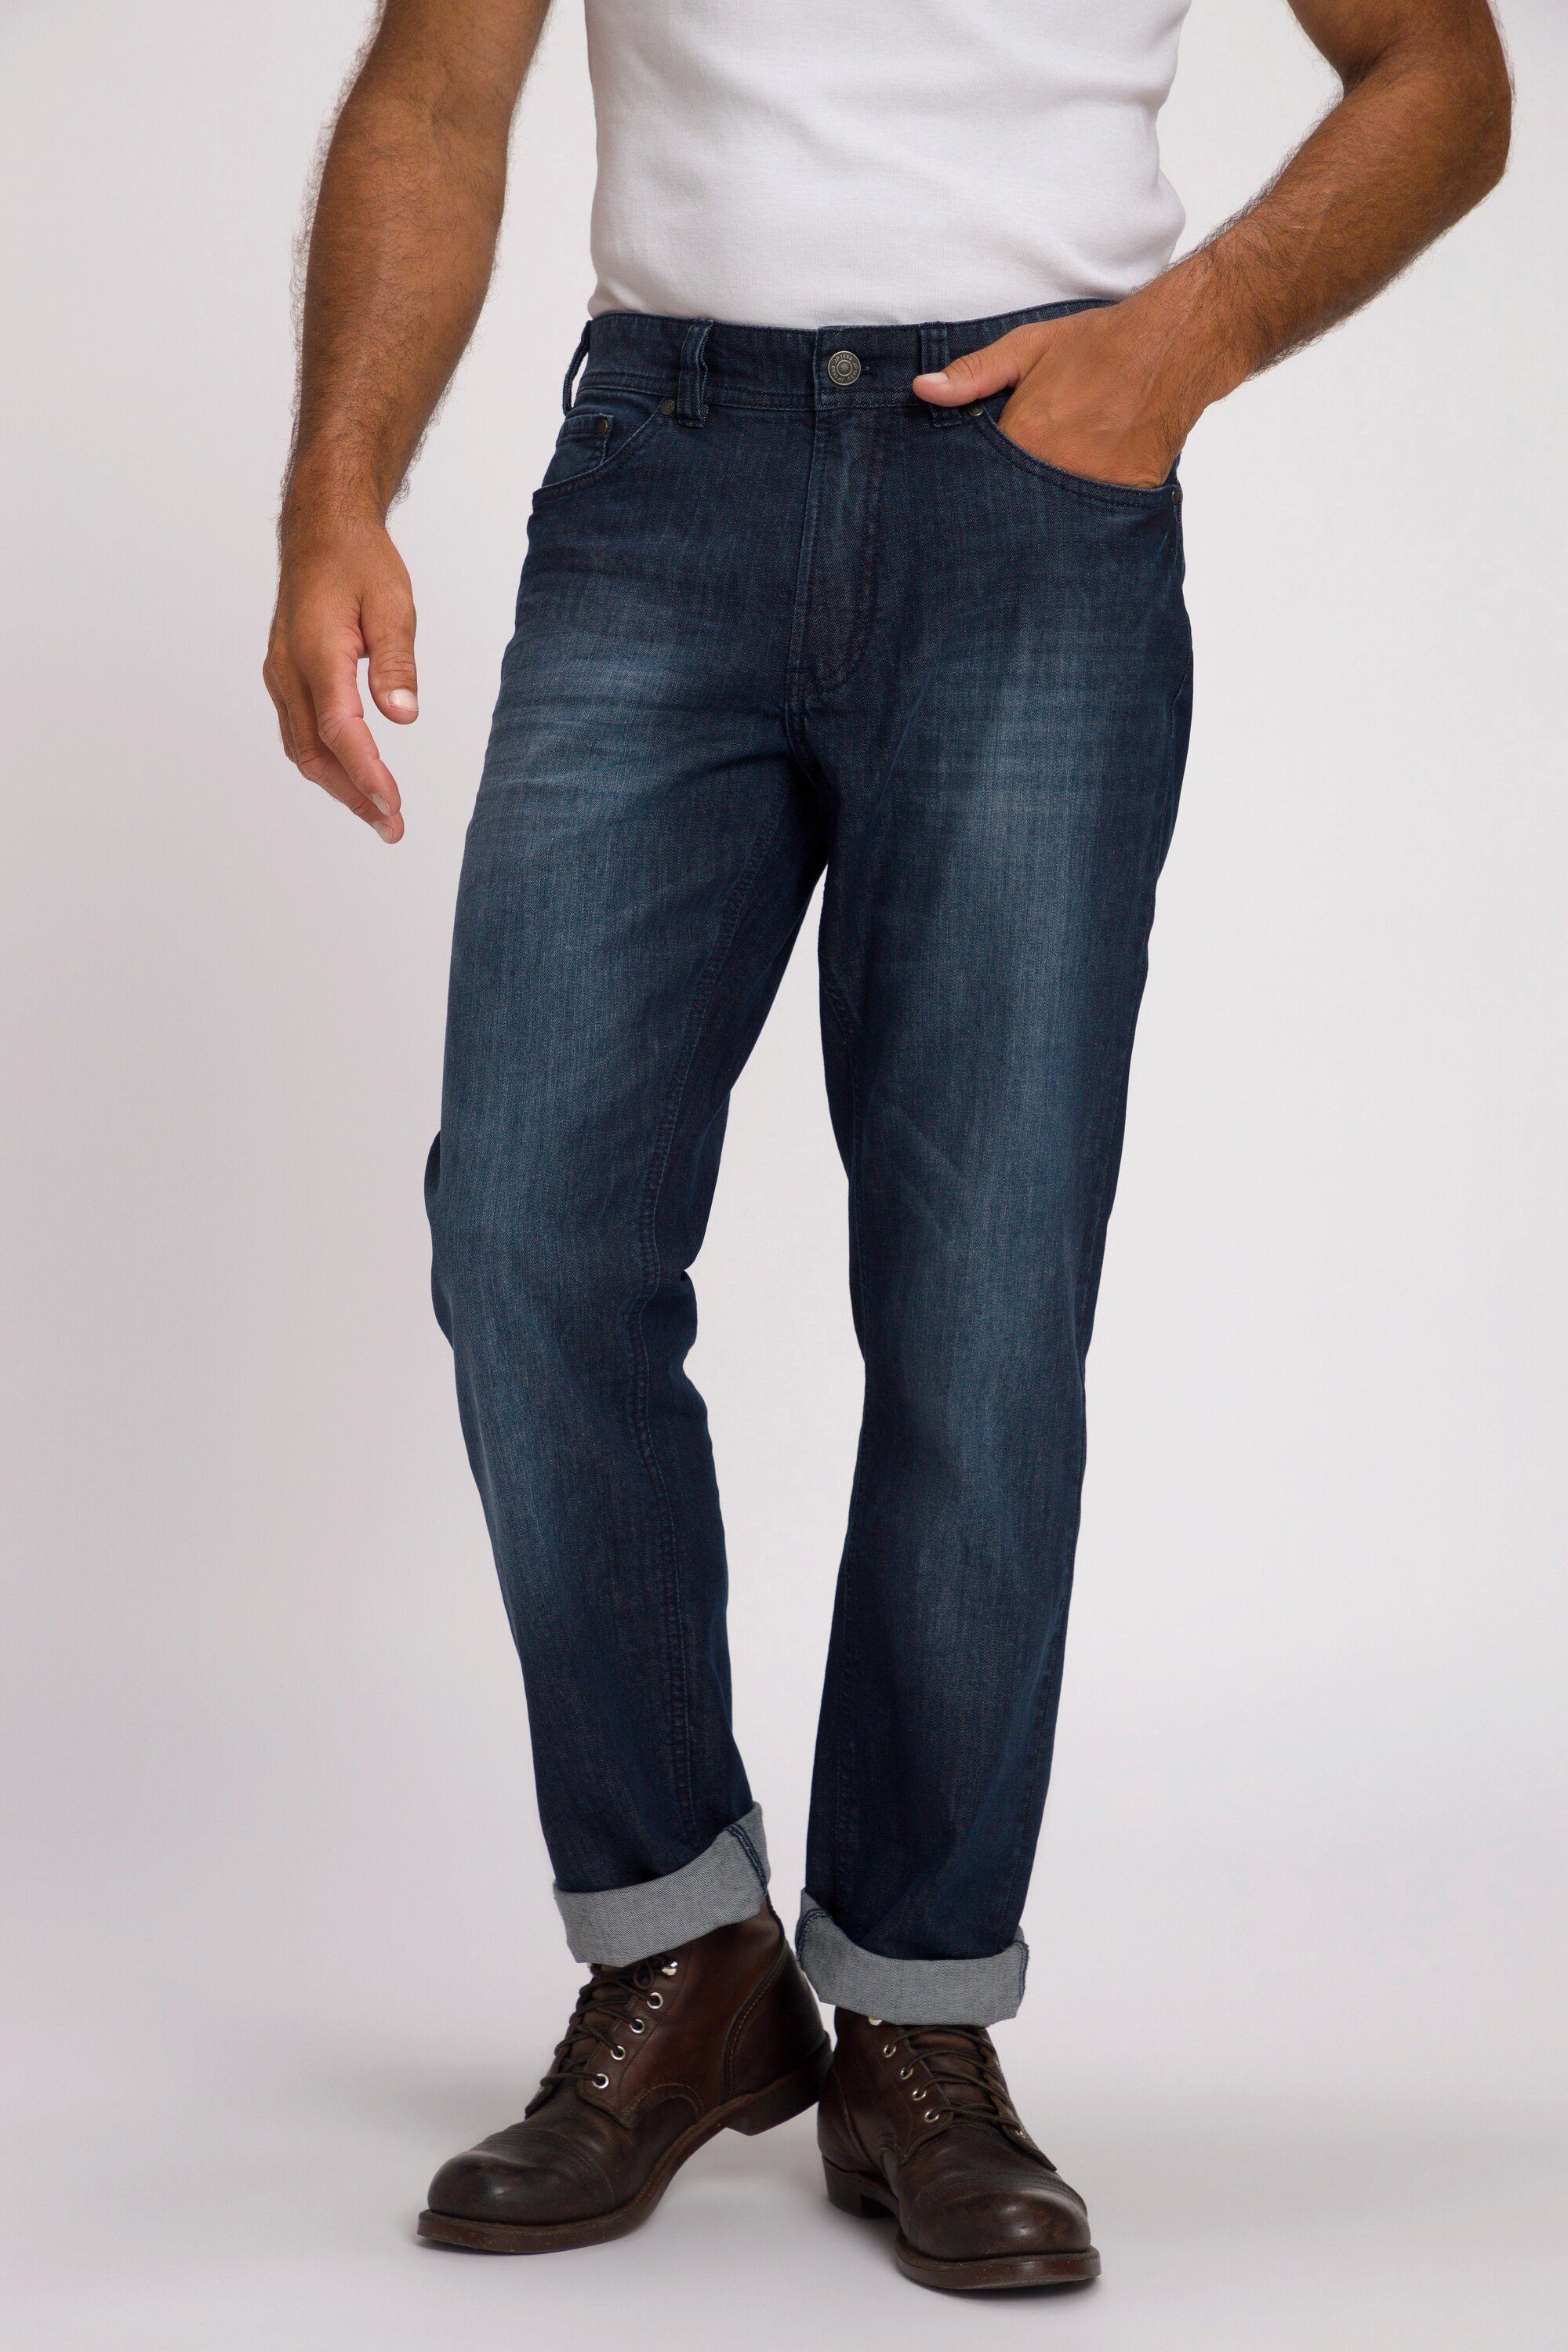 JP1880 dark Cargohose Denim Regular blue 5-Pocket Jeans denim Denim Fit